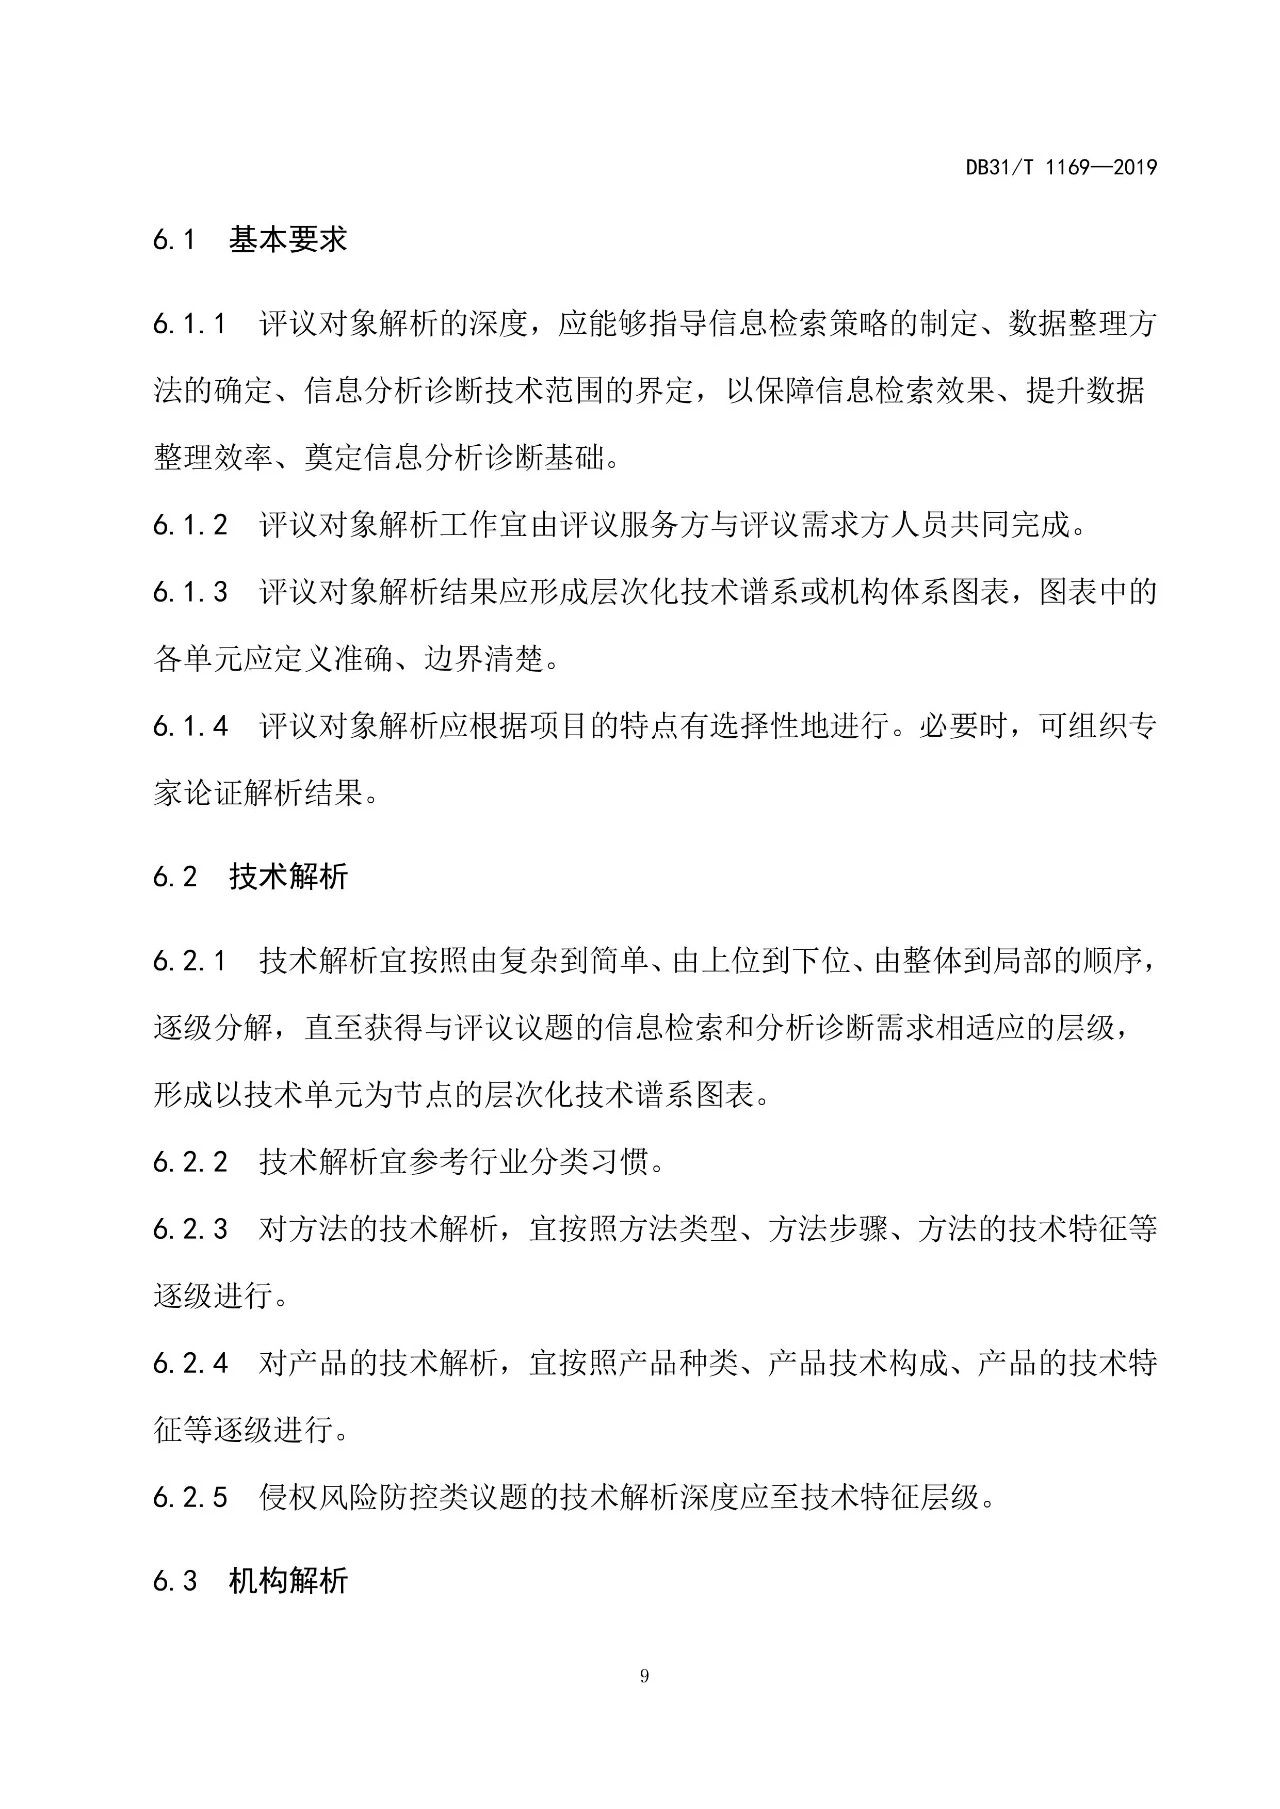 10月1日施行！上海发布《知识产权评议技术导则》地方标准（附全文）